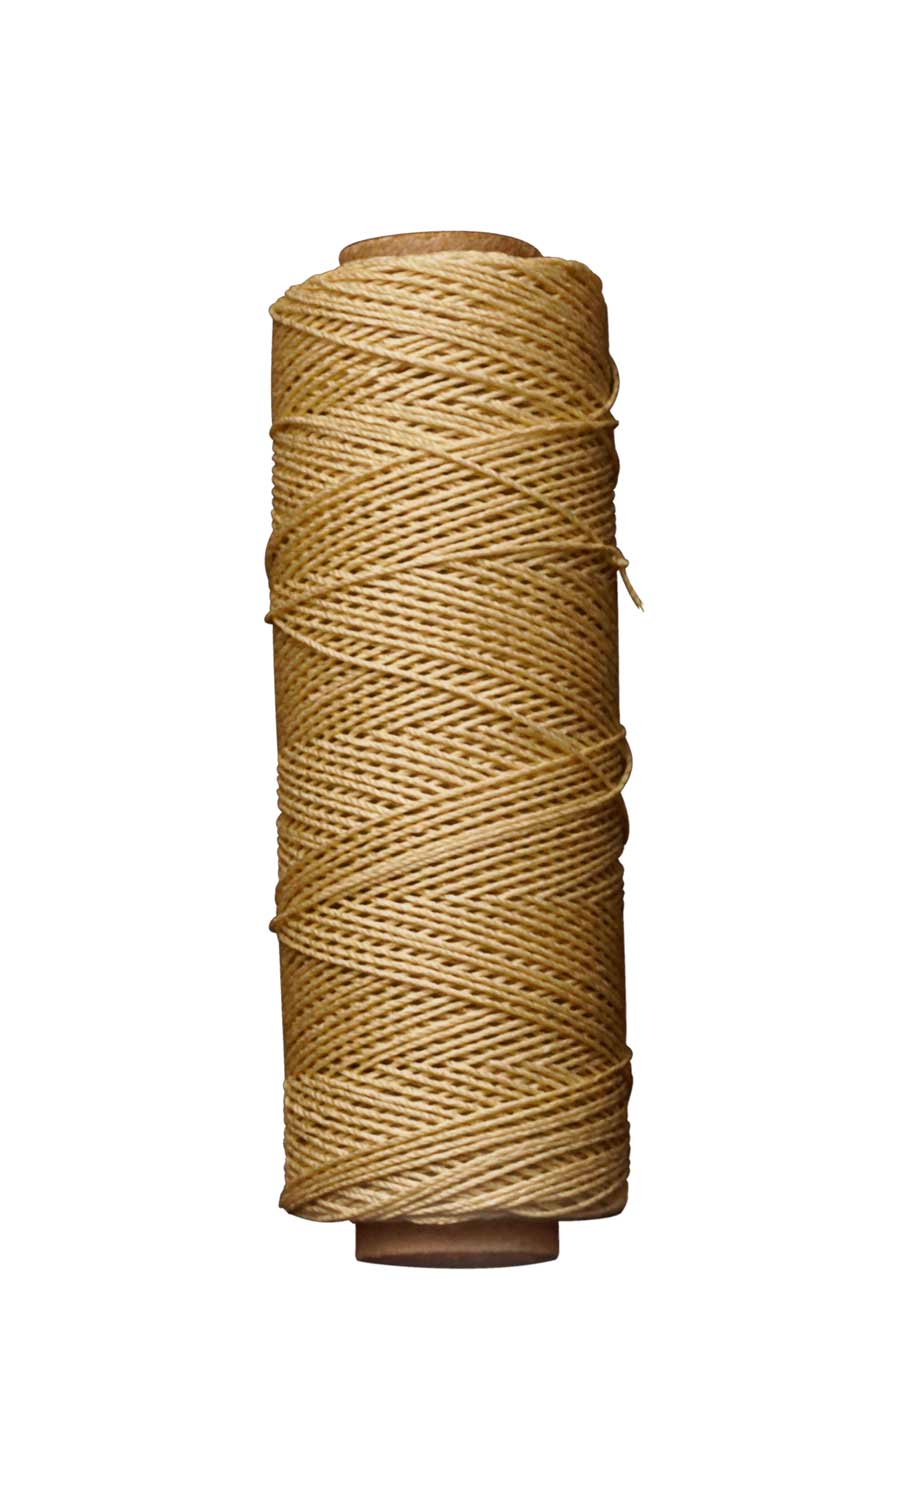 Hand Stitching Thread